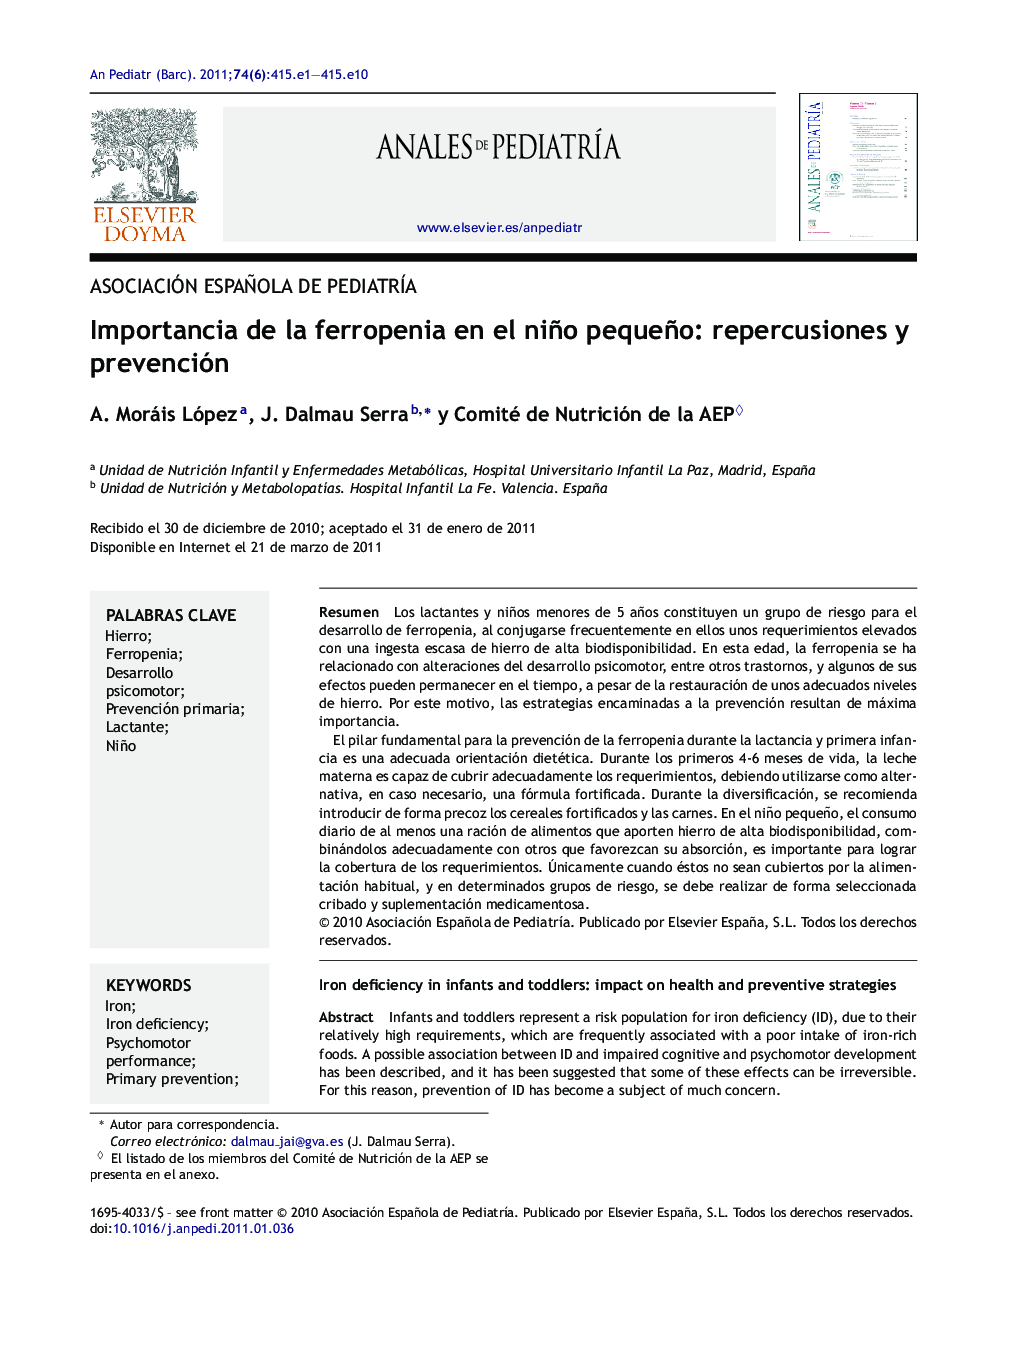 Importancia de la ferropenia en el niño pequeño: repercusiones y prevención